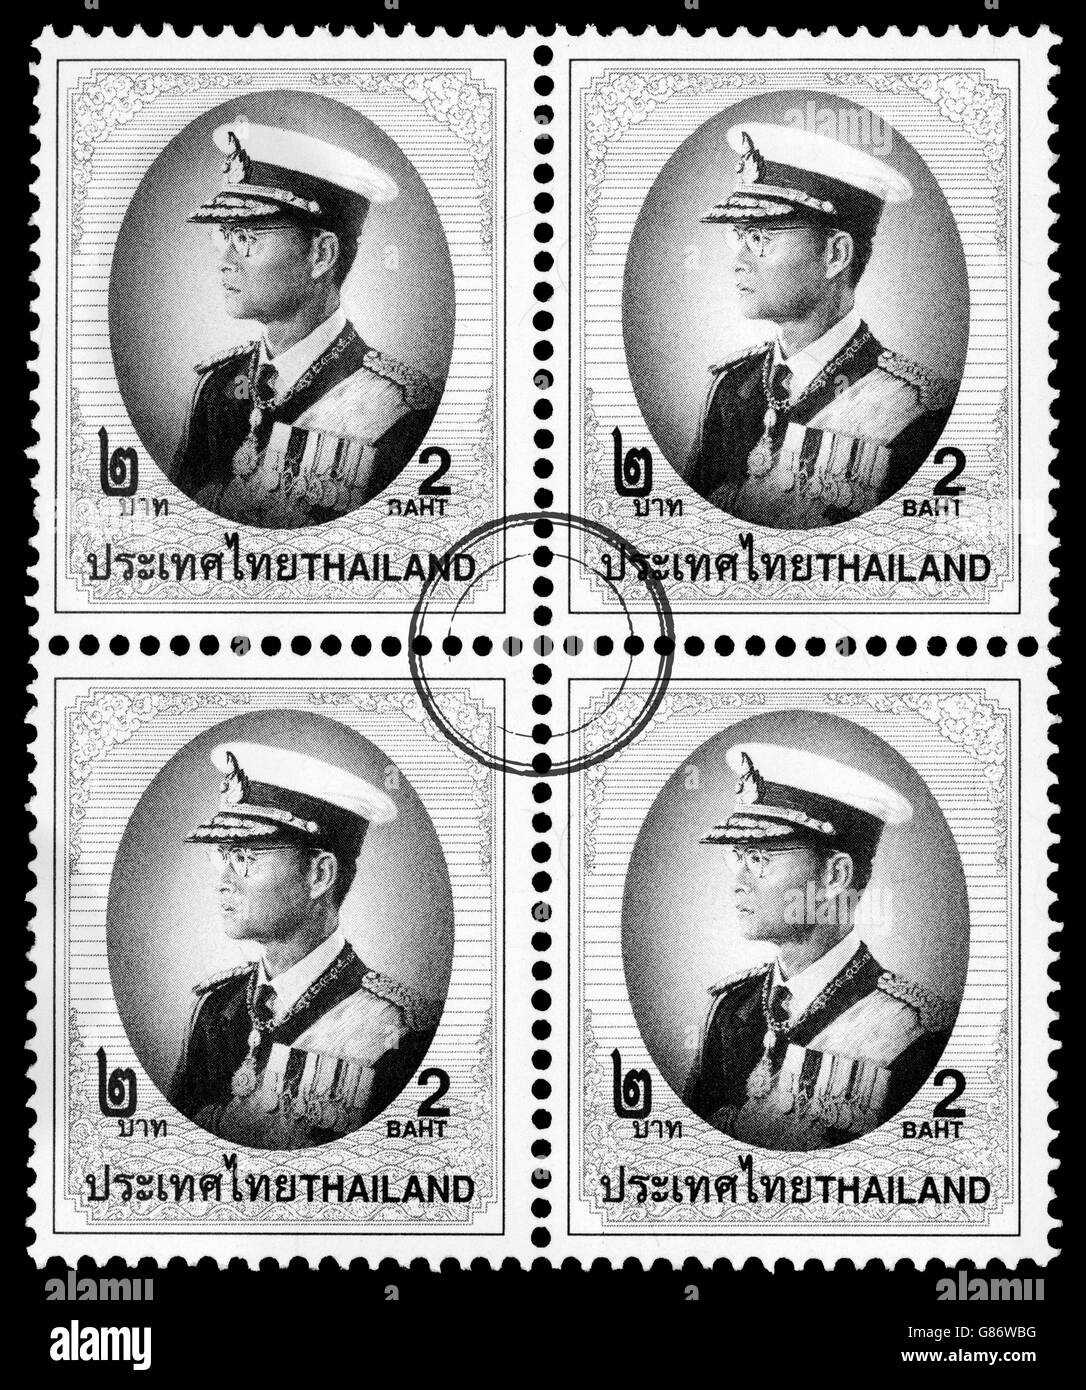 Un timbre-poste de Sa Majesté le Roi Bhumibol Adulyadej de Thaïlande Banque D'Images